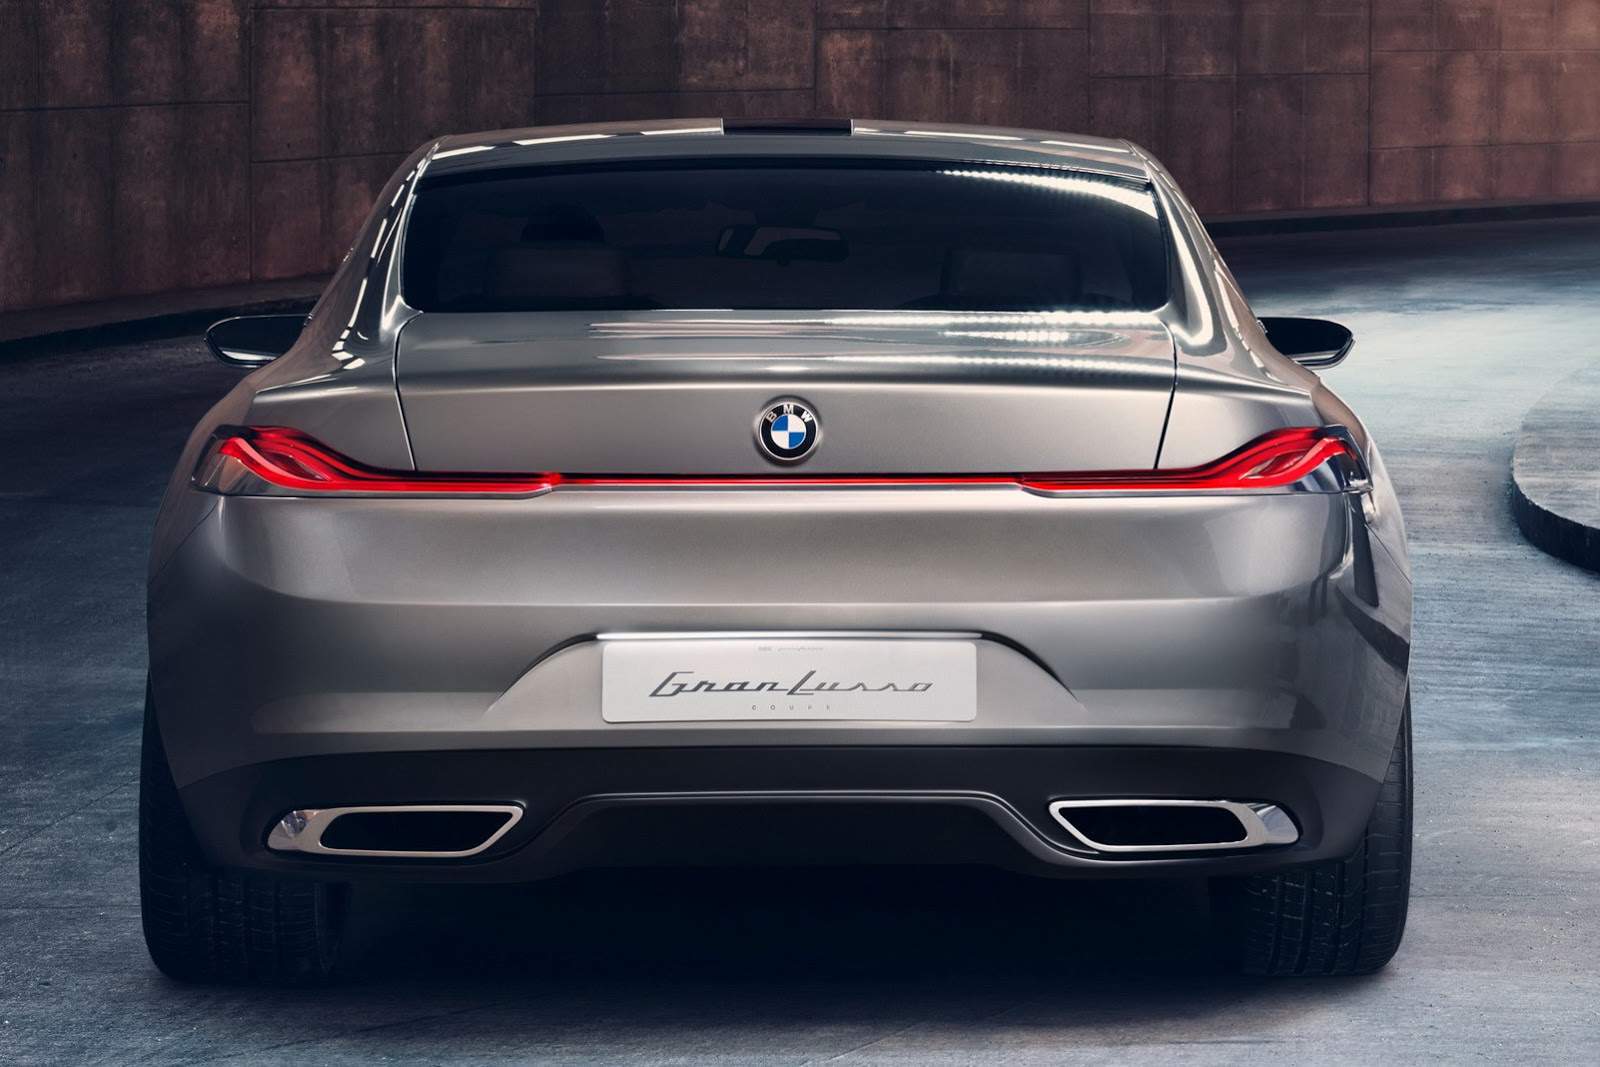 ¡Gran noticia! BMW reviviría la Serie 8 con un nuevo modelo de lujo